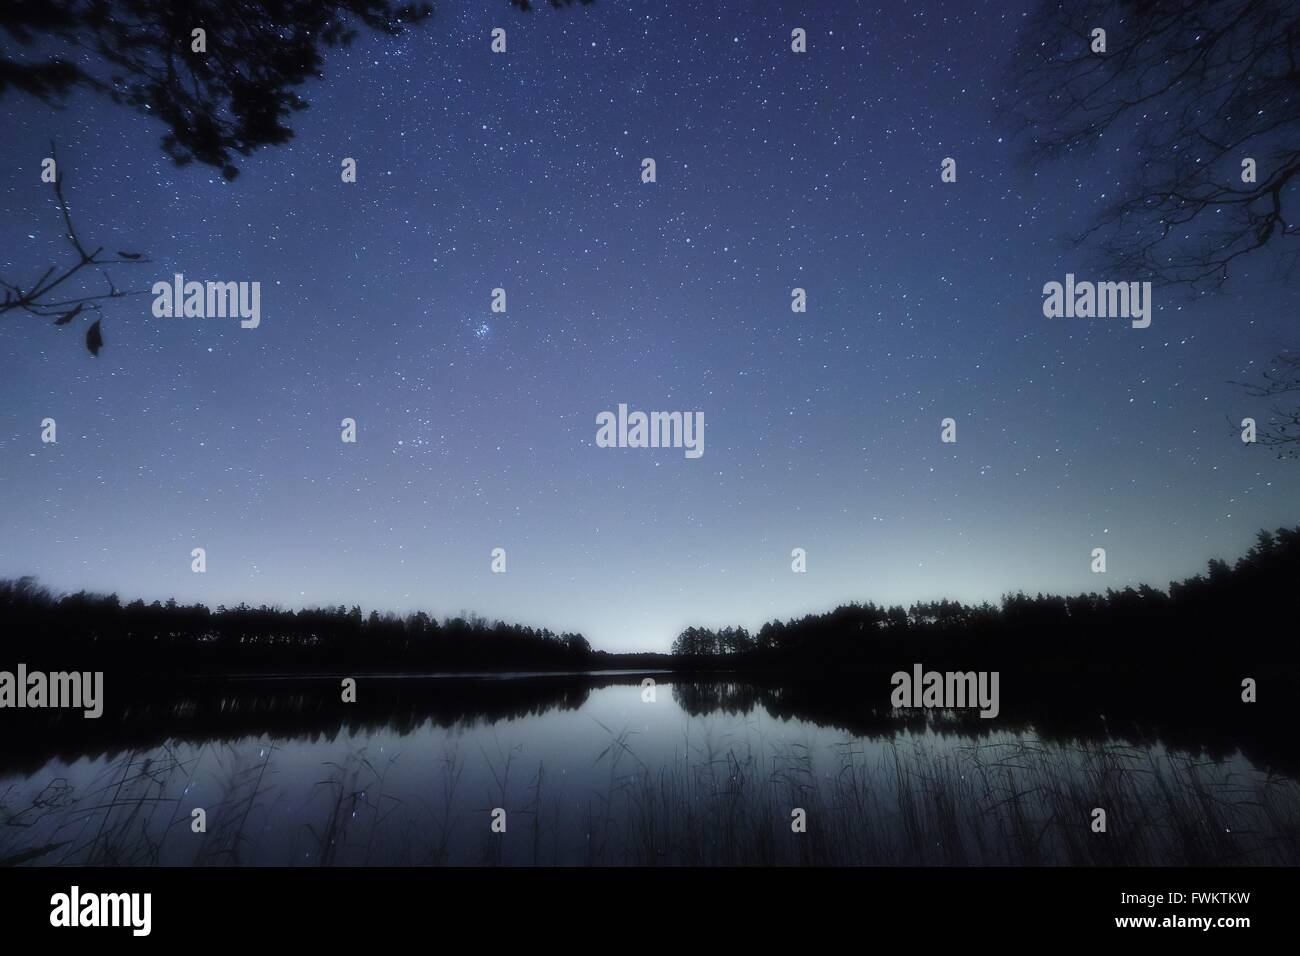 Ruhige Nachtszene mit Sternenhimmel an einem See in Finnland. Reflexion der Sterne auf das Stille Wasser des Sees. Stockfoto